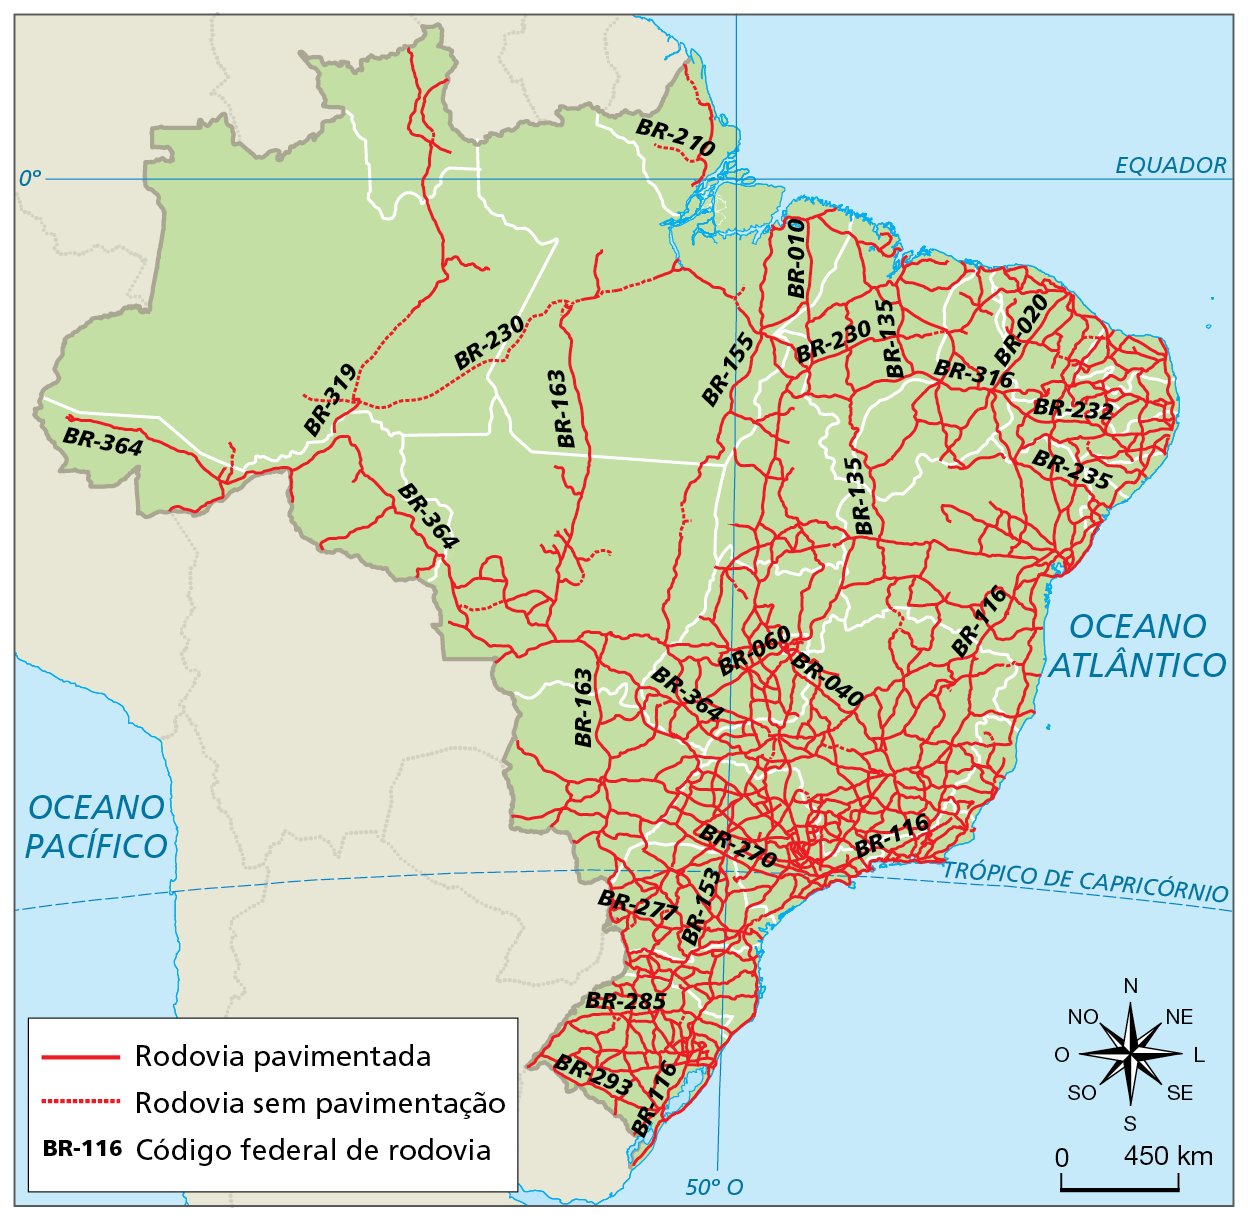 Mapa. Brasil: rede rodoviária federal – 2021 . 
Mapa do Brasil mostrando a distribuição da malha rodoviária federal, tanto de rodovias pavimentadas (em traço vermelho contínuo) quanto sem pavimentação (com traço vermelho tracejado). Além disso, há o código federal de algumas rodovias descrito em preto.
Rodovias pavimentadas: grande concentração nas regiões sudeste, sobretudo no estado de São Paulo, e sul. Em Goiás, no Distrito Federal e próximo à faixa costeira nordestina, também a adensamento de rodovias pavimentadas. Em menor quantidade, há rodovias que cruzam as regiões centro-oeste e norte.
Rodovias sem pavimentação: em geral, estão em trechos ligados às rodovias pavimentadas, sobretudo nos estados do Amazonas, do Pará, do Amapá e do Mato Grosso. Há outros trechos menores não pavimentados no interior do nordeste, em Goiás, em São Paulo, em Minas Gerais, no Espírito Santo, no Paraná e no Rio Grande do Sul.
Código federal de rodovia: BR-116 - se estende do Rio Grande do Sul até o litoral cearense, em uma faixa próxima ao litoral brasileiro. BR-293 - cruza a porção sul do Rio Grande do Sul. BR-85 está na faixa norte do Rio Grande do Sul. BR-277 - cruza a porção sul do Paraná, de oeste à leste. BR-153 - estende-se da região sul ao norte do território, no sentido vertical. BR-270 - cruza a porção sul de São Paulo, de oeste à leste. BR-040 - estende-se de Brasília ao Rio de Janeiro. BR-364 - estende-se de São Paulo ao Acre, passando pelo centro-oeste e por Rondônia. BR-235 - do litoral de Sergipe à porção interiorana da região nordeste. BR-232 - de Pernambuco à porção interiorana da região nordeste. BR-316 - estende-se do litoral de Alagoas à Belém. BR-020 – do litoral de Fortaleza à porção interiorana da região nordeste. BR-135 – do Maranhão à porção interiorana do território nacional. BR-230 - do litoral da Paraíba ao interior amazonense. BR-010 - de Belém à Brasília, passando pelo Tocantins. BR-163 - liga o Mato Grosso do Sul ao Pará. BR-155 - extensão longitudinal, do Pará à porção centro-sul do território. BR-210 - localizada no Amapá. BR-319 - de Rondônia ao Amazonas. BR-060 – de Brasília ao Mato Grosso do Sul.
Na parte inferior, rosa dos ventos e escala de 0 a 450 quilômetros.